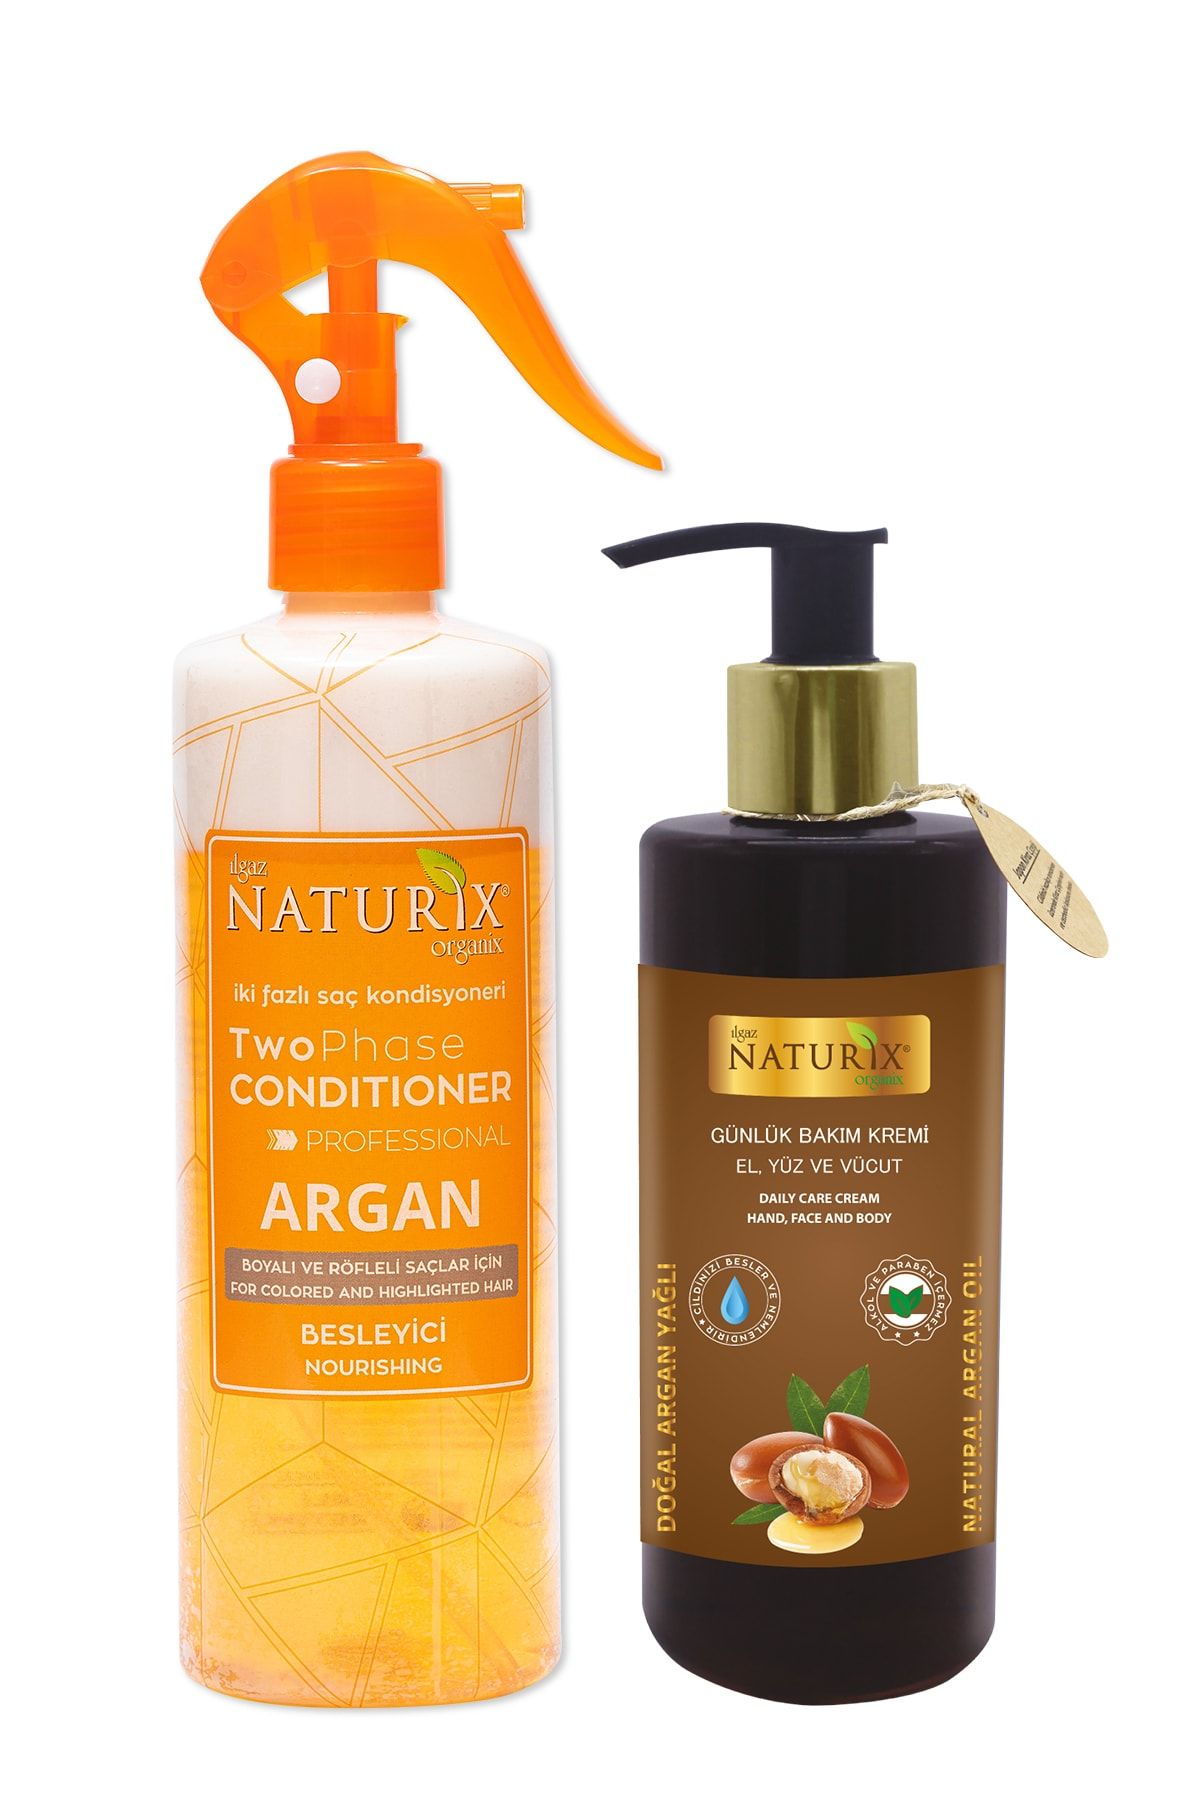 Naturix Bakımsız Saçlara Argan Yağlı Iki Fazlı Sıvı Saç Kremi 400 Ml + Argan El Yüz Vücut Losyonu 250 Ml